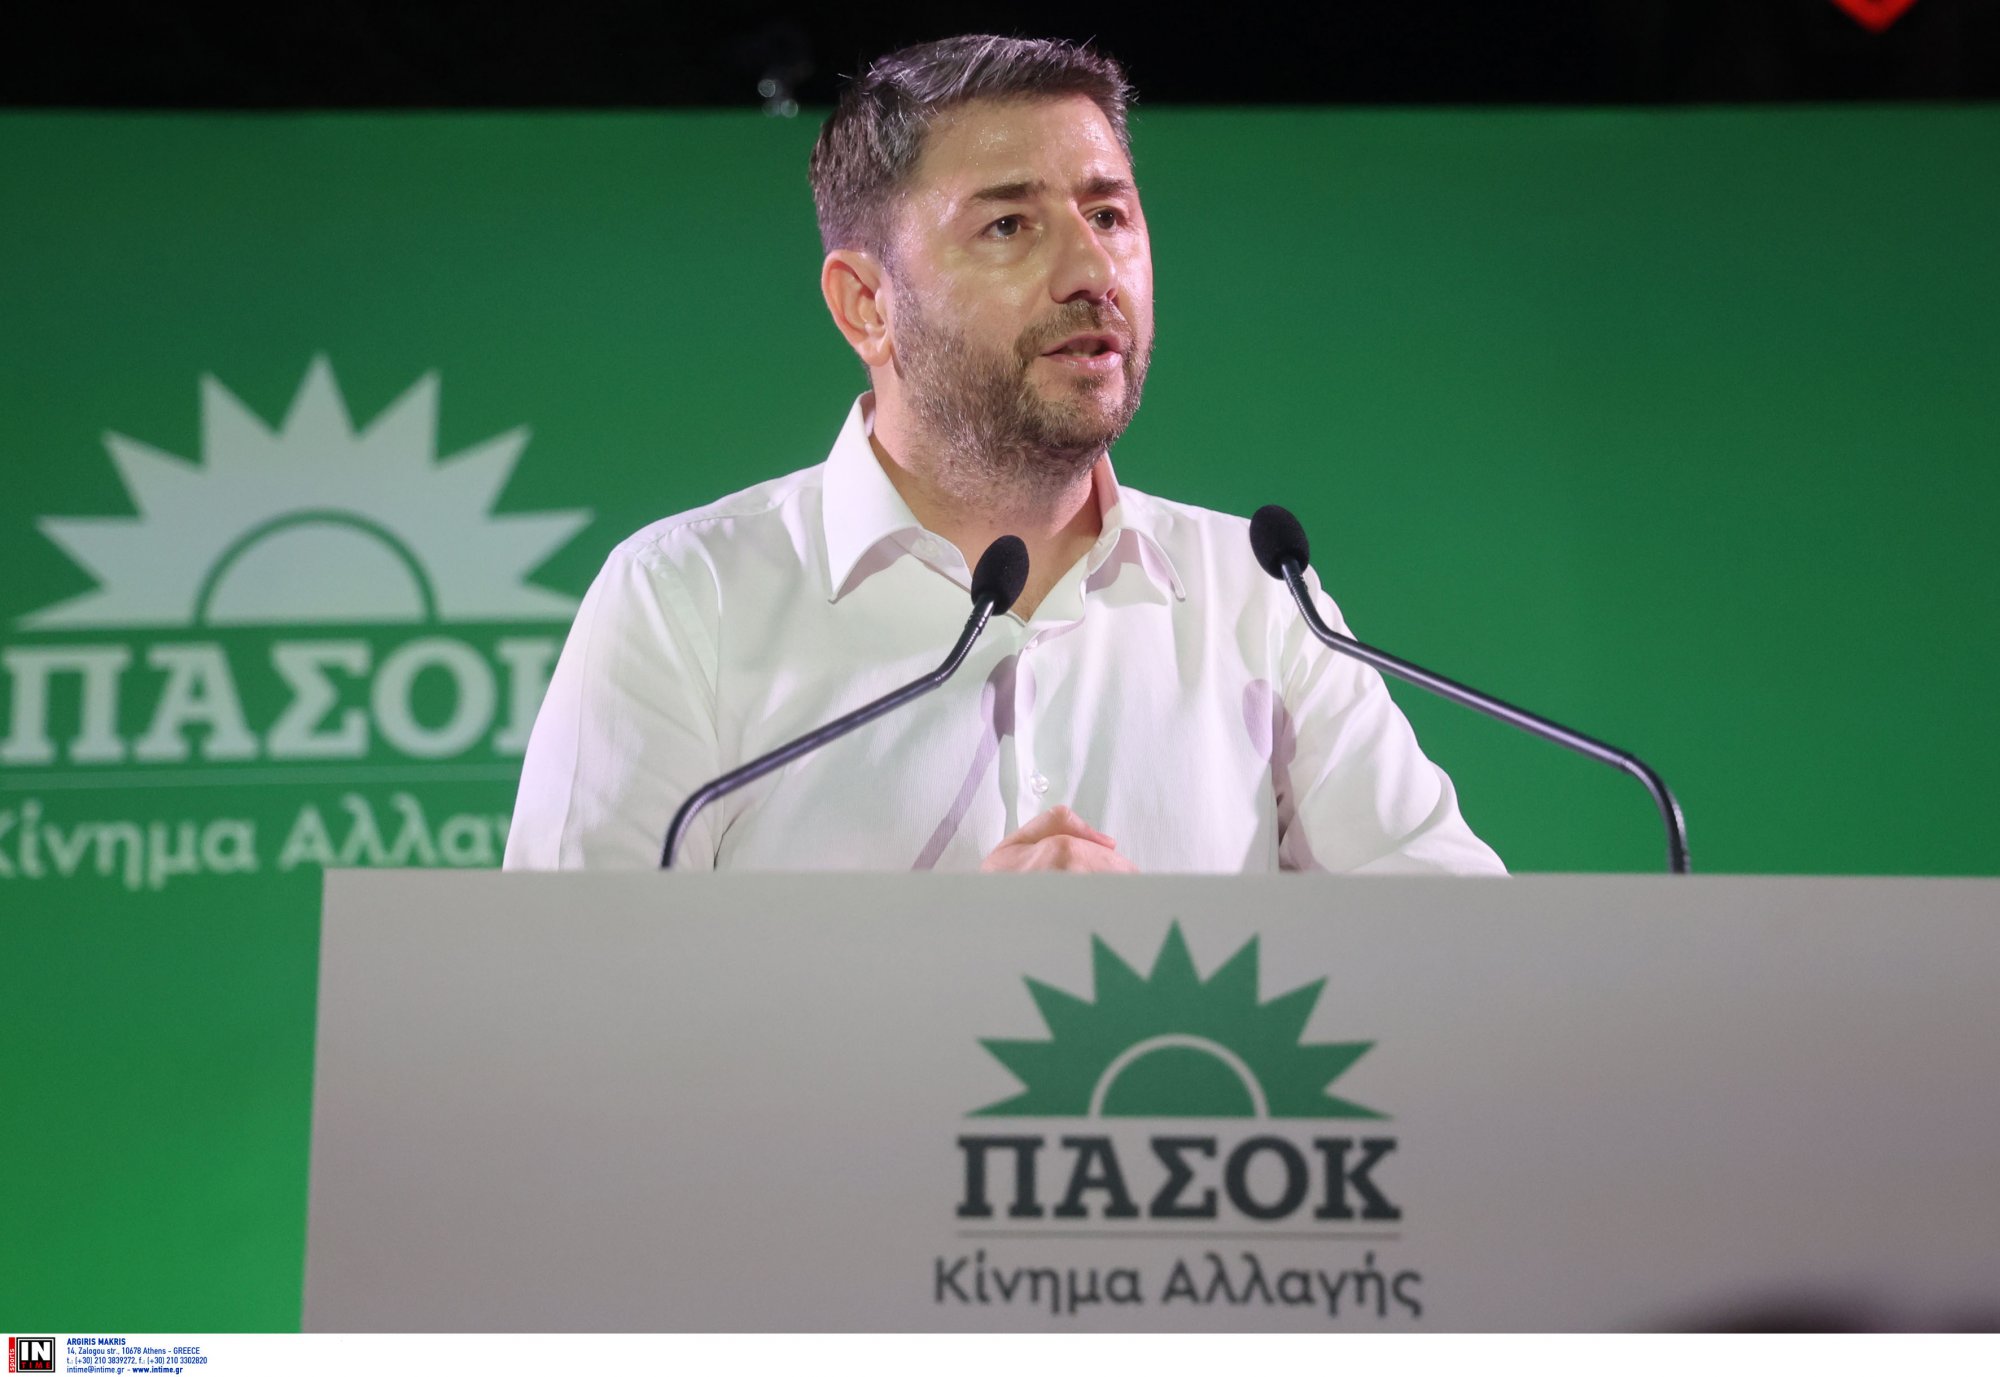 Νίκος Ανδρουλάκης:  Είμαι έτοιμος να αξιολογηθώ - Οποιος έχει φιλοδοξίες να δηλώσει παρών